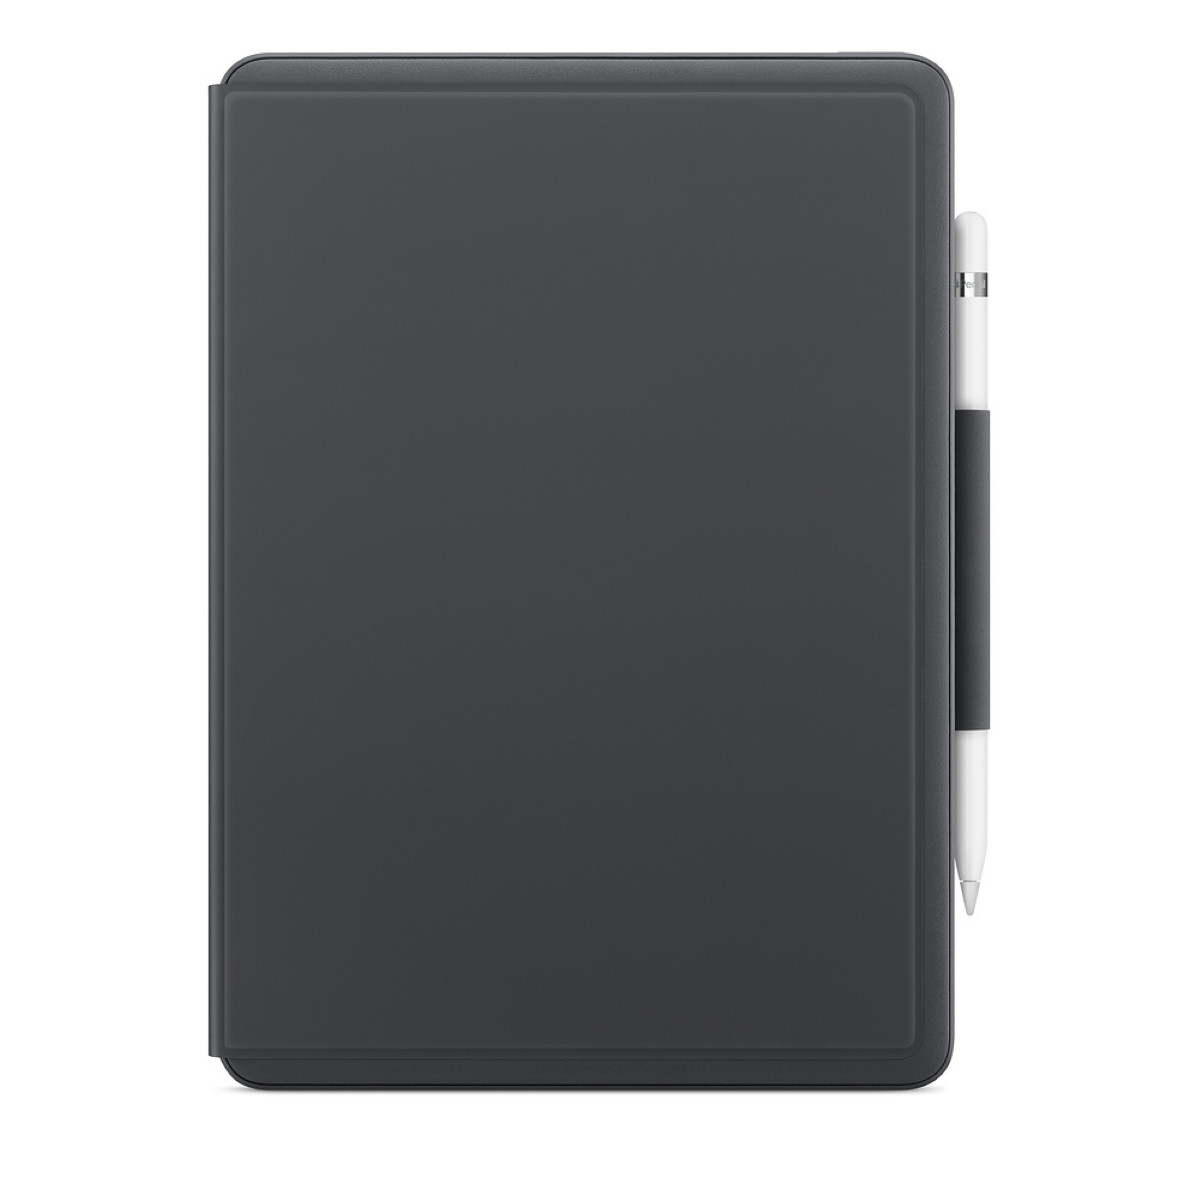 Logitech Slim Folio iPad Case